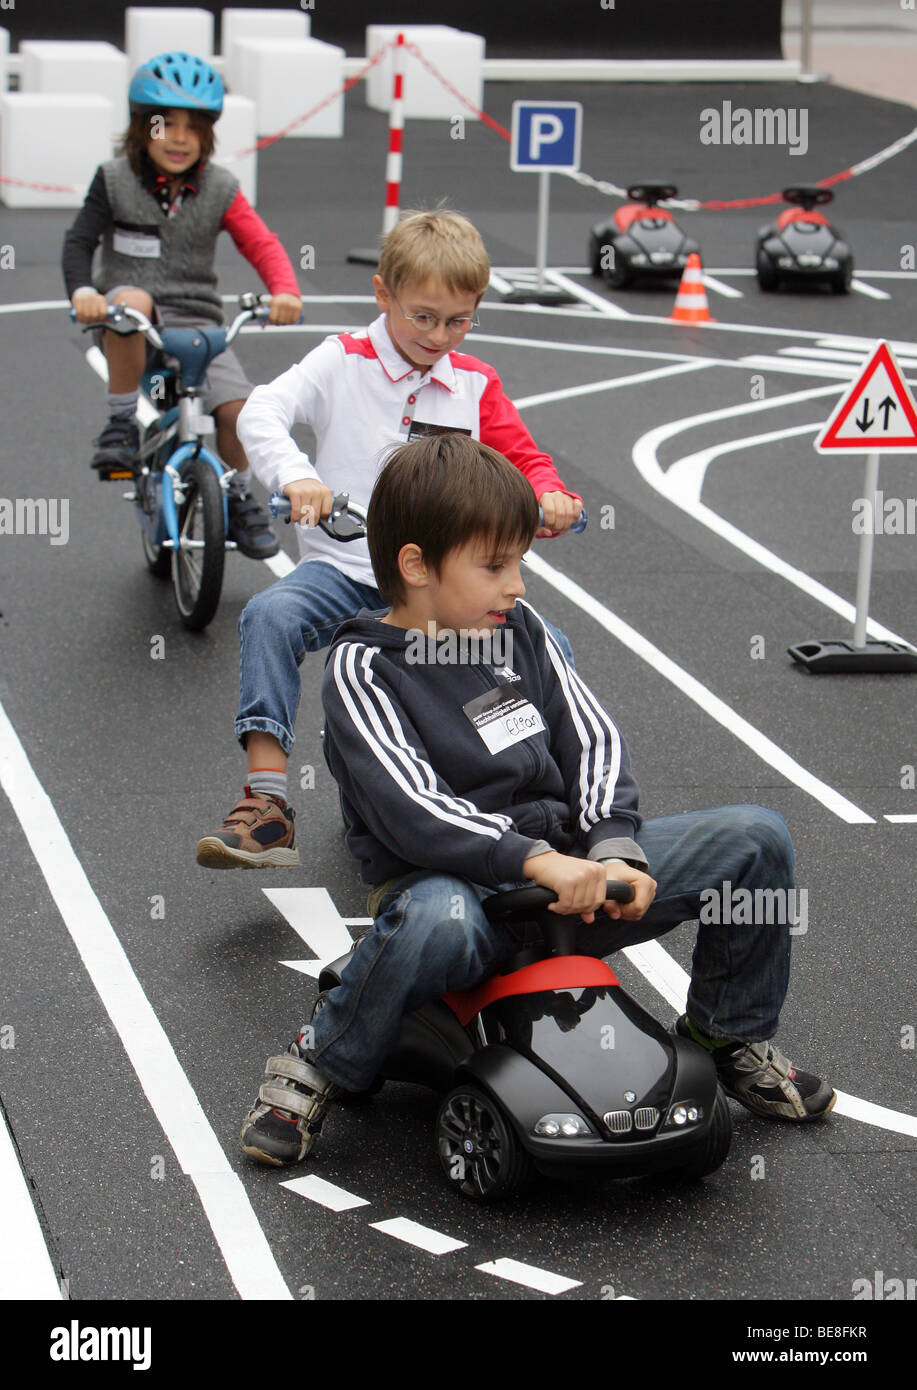 Les enfants qui apprennent les règles de circulation au 63ème Salon International de l'automobile IAA Frankfurt/Allemagne Banque D'Images